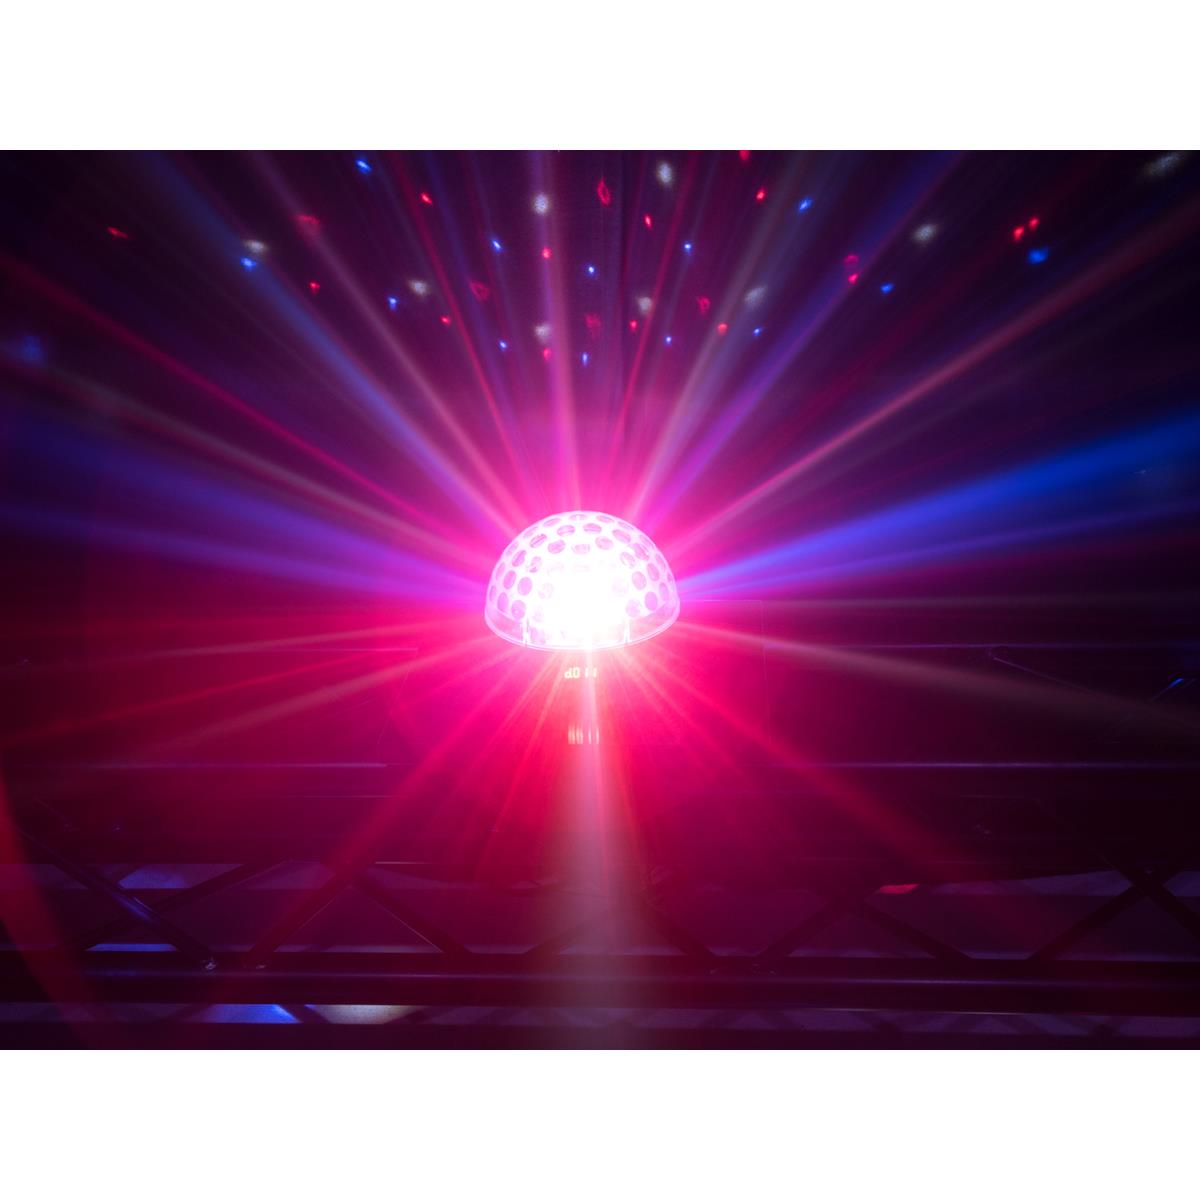 LED Kugel-Strahleneffekt "BC-6" - 360° Raumeffekt ähnlich Spiegelkugel - 5farbig - langsam & schnell